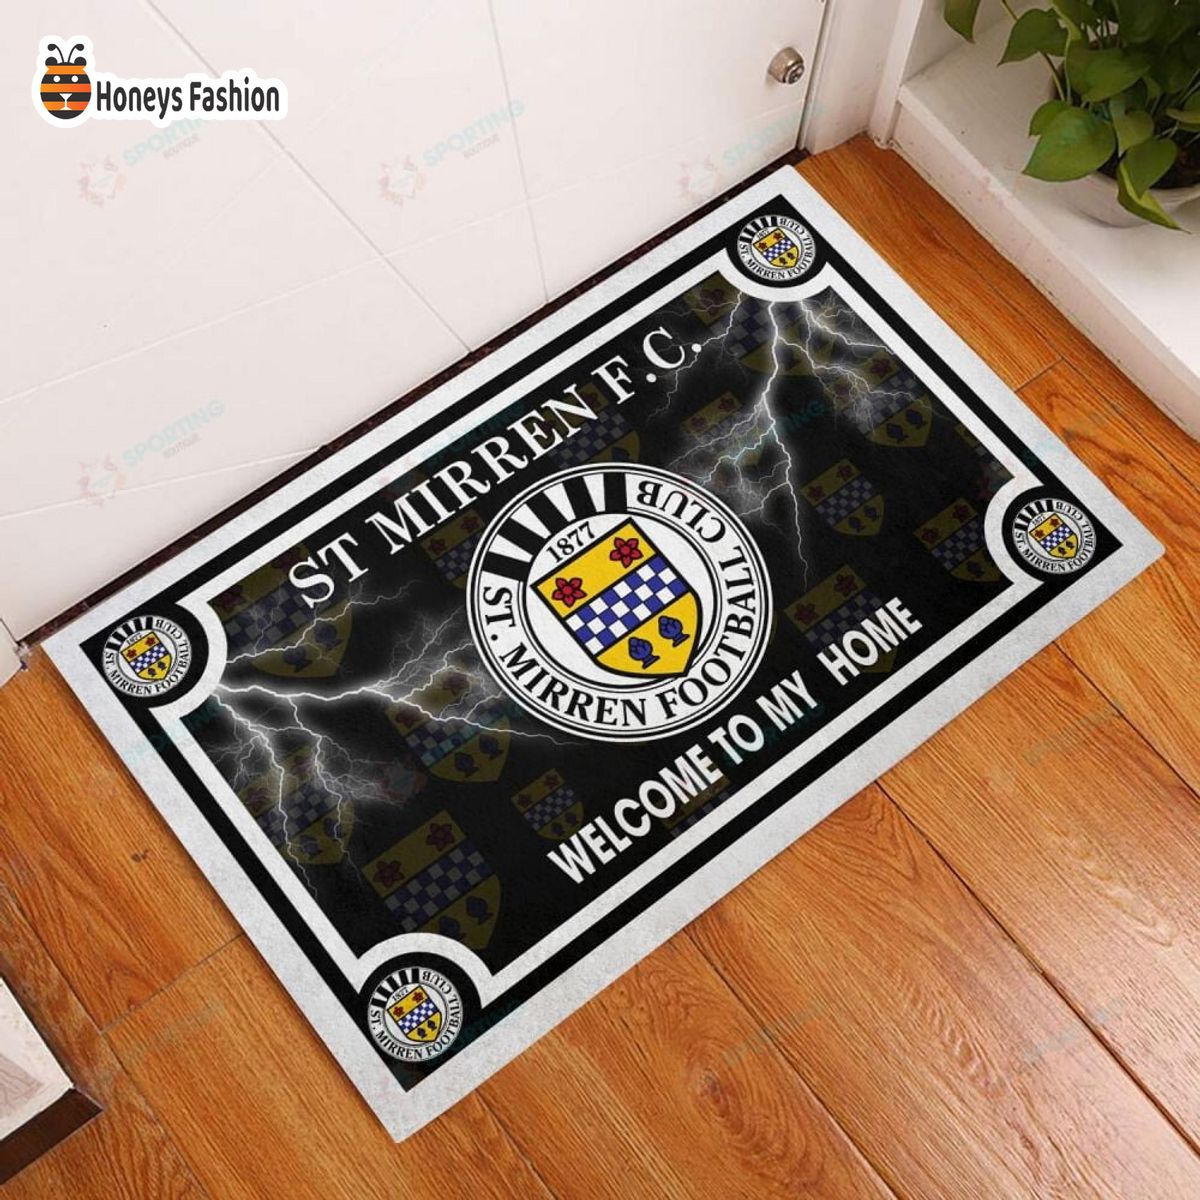 St Mirren F.C. welcome to my home doormat